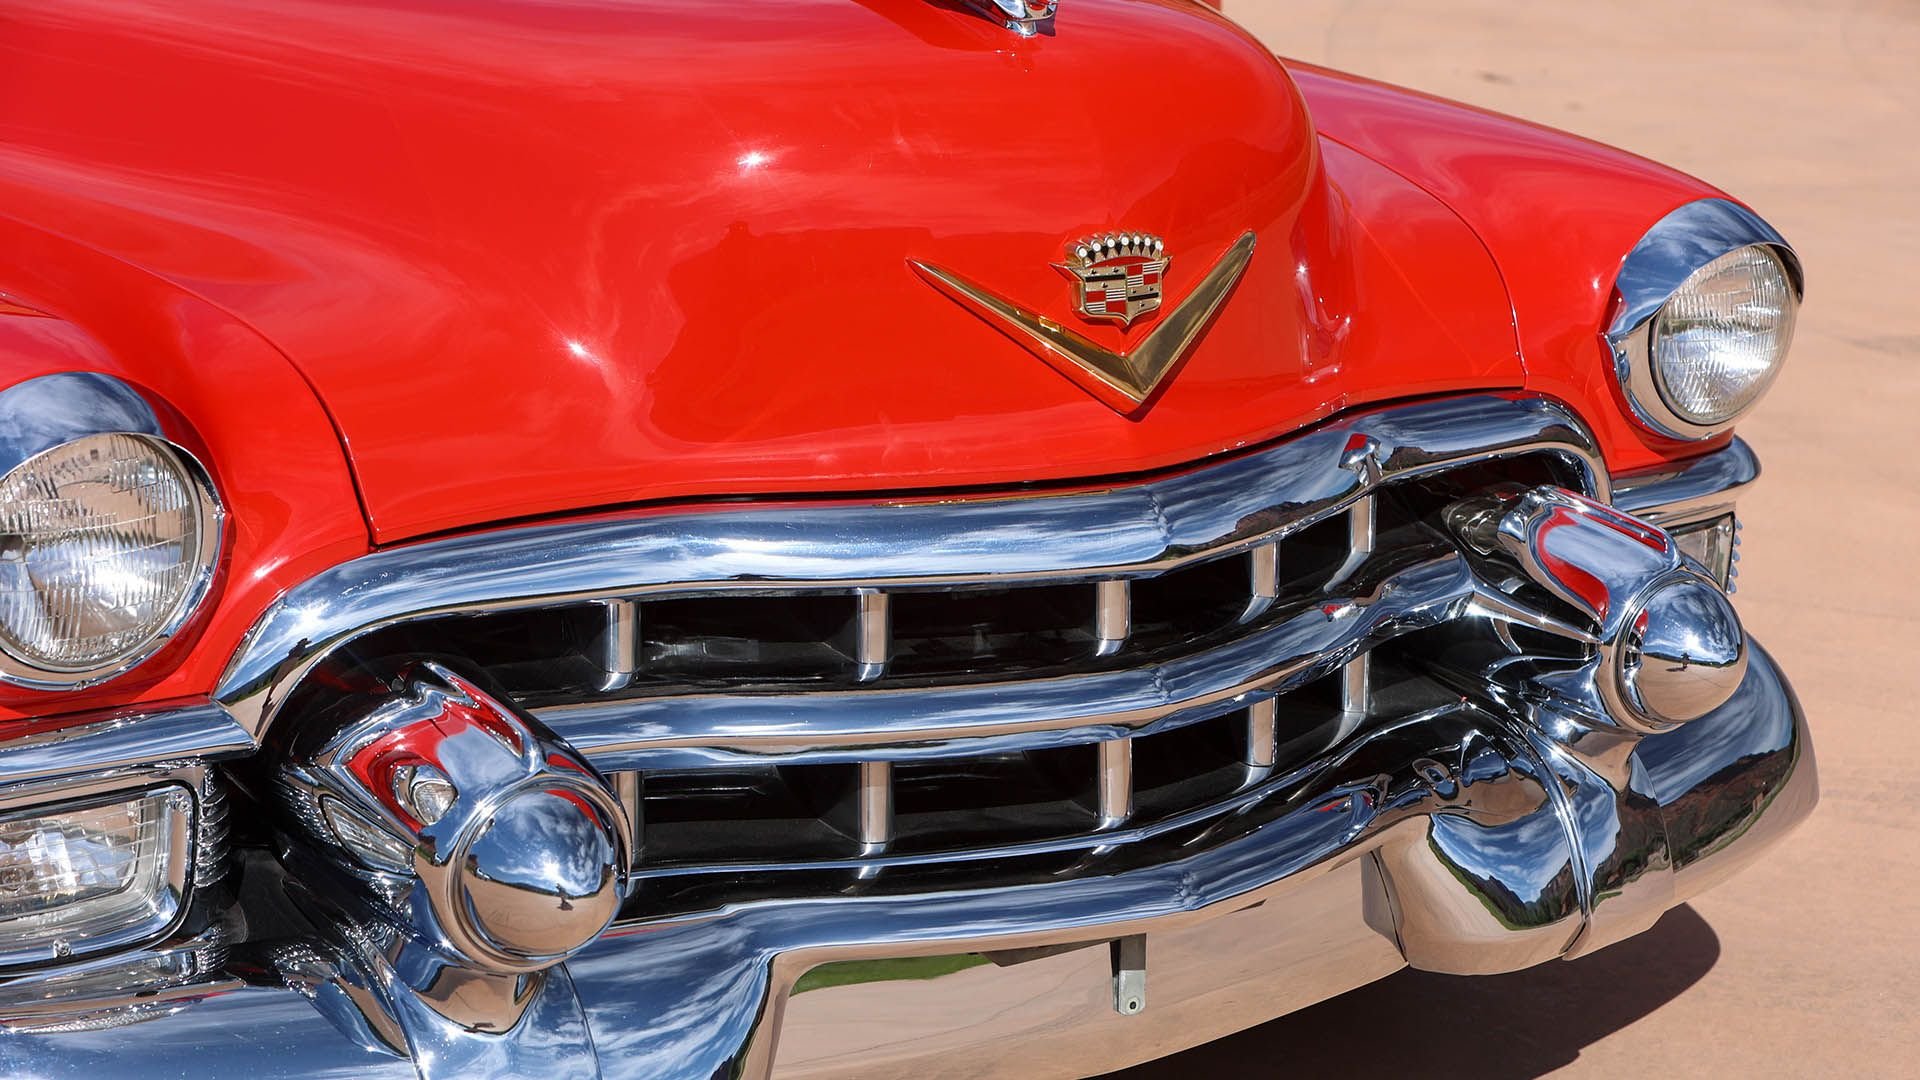 For Sale 1953 Cadillac Eldorado